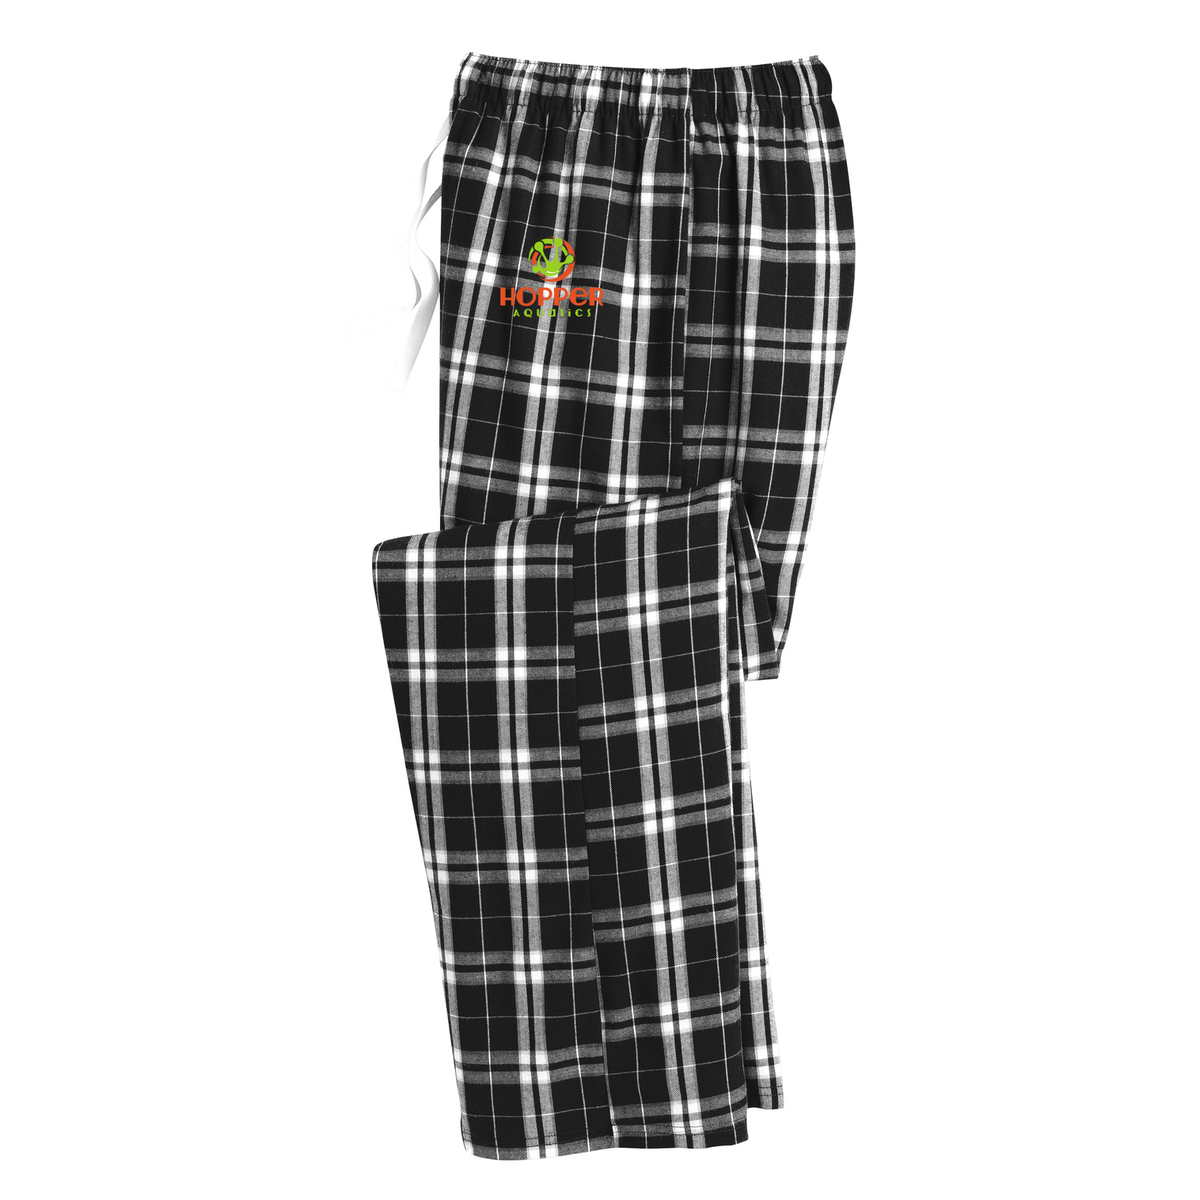 Hopper Aquatics Plaid Pajama Pants